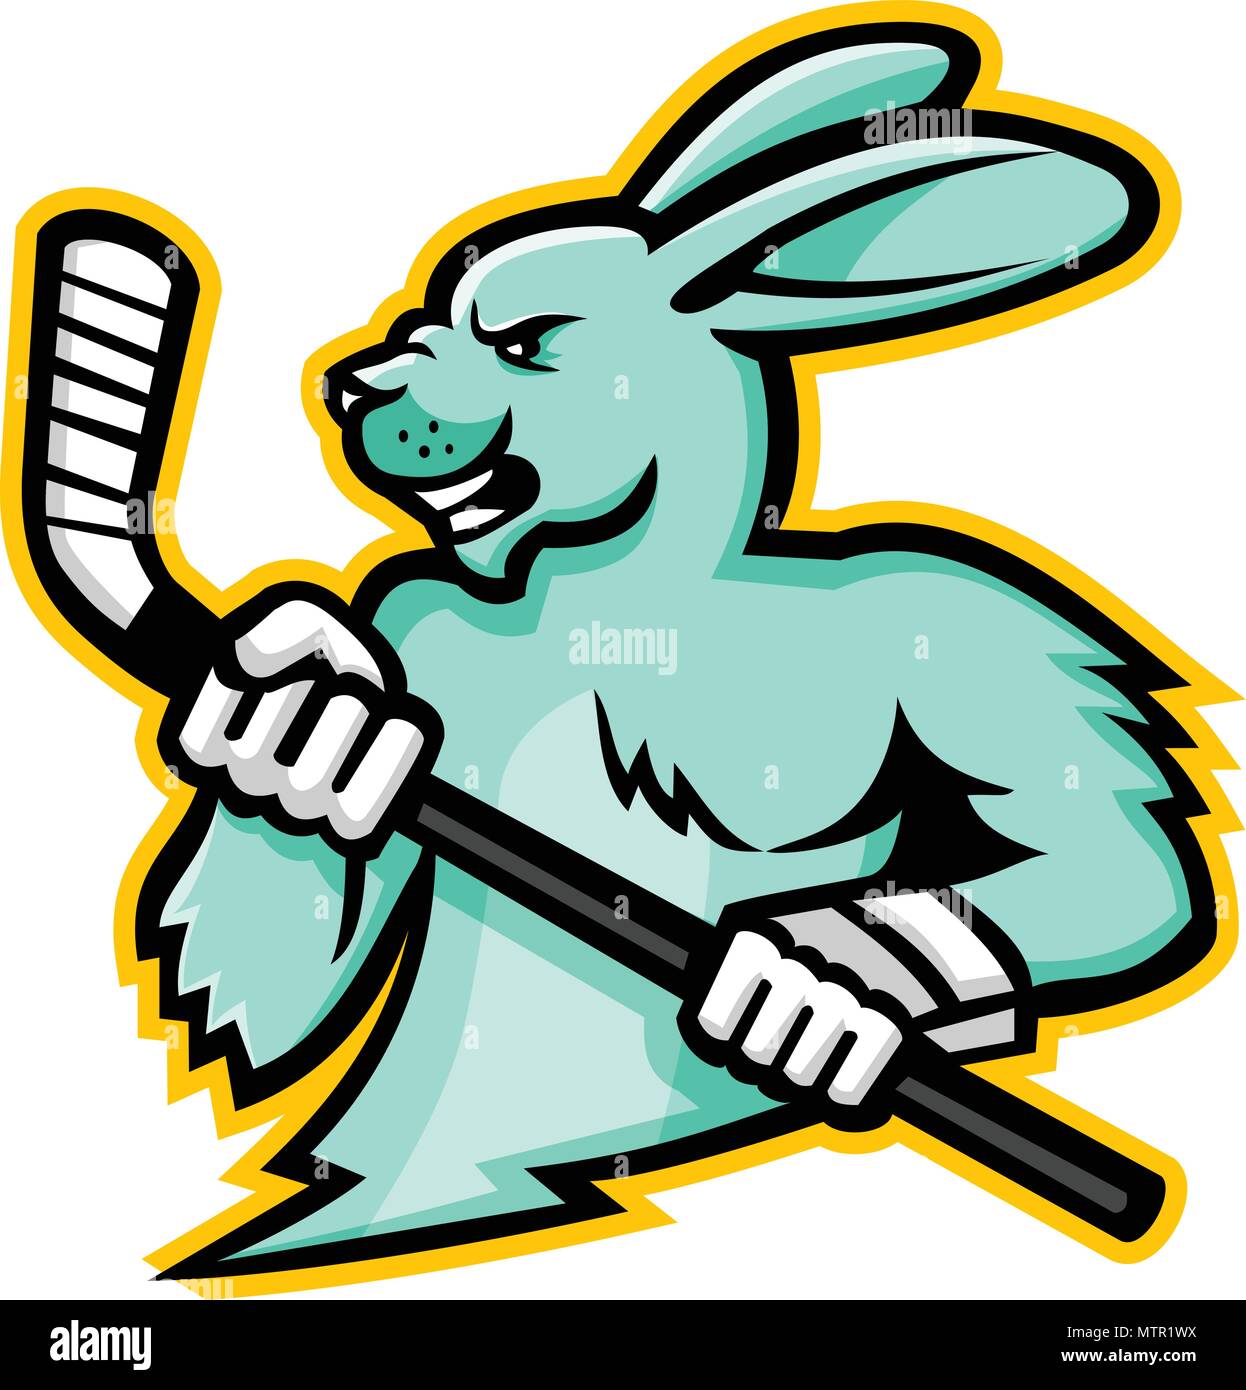 Maskottchen Symbol Abbildung: Leiter der Hase, Hasen oder Kaninchen  Eishockey Spieler mit einem Ice Hockey Stick von der Seite auf isolierten  Hintergrund betrachtet Stock-Vektorgrafik - Alamy